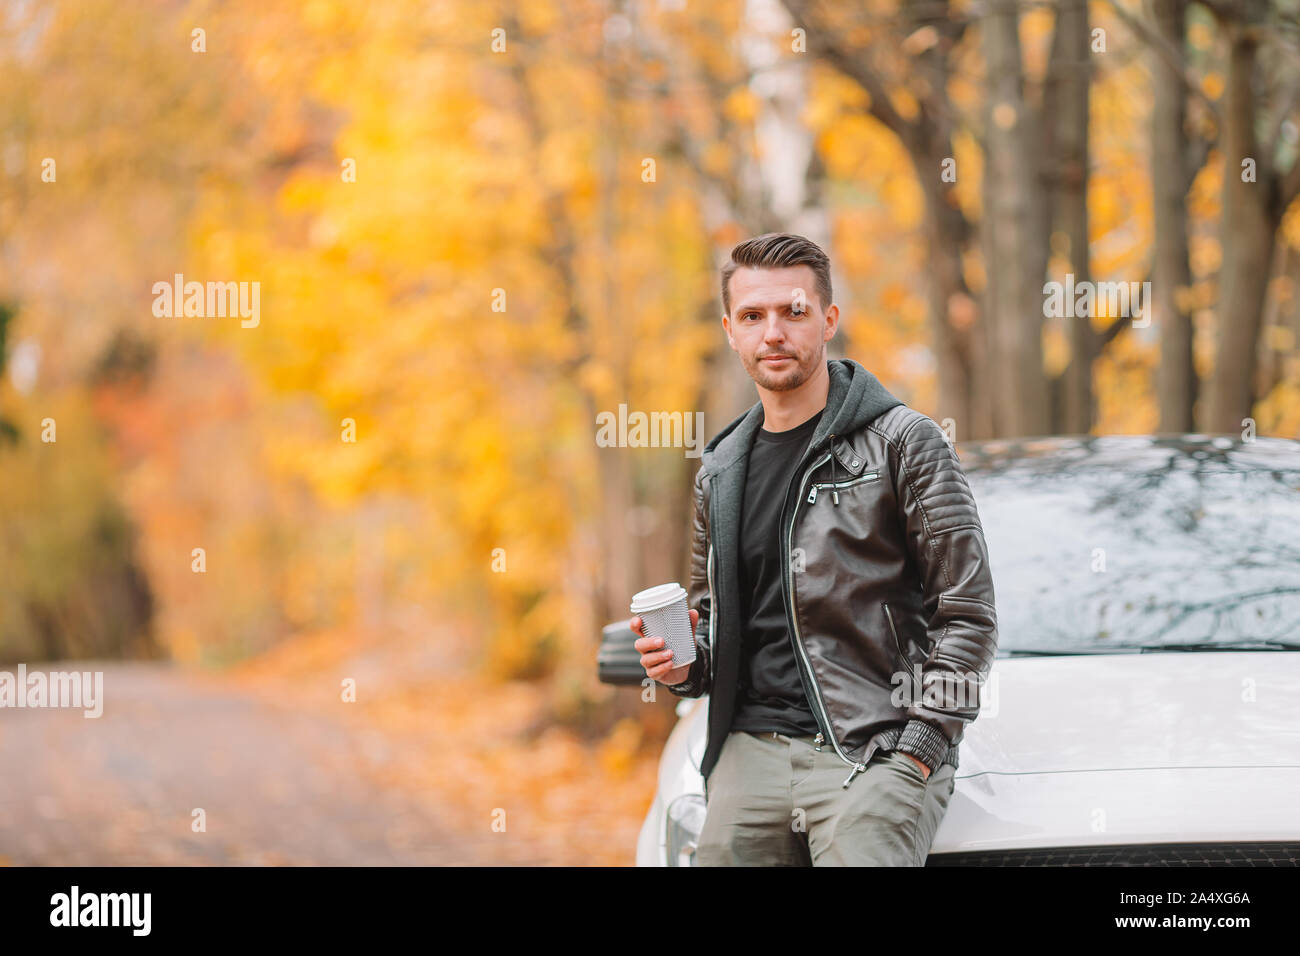 5 октября мужчина. Мужская фотосессия с машиной осенью. Фотосессии с машиной осень мужчина. Фотосессия мужская на улице осень с авто. Осень мужчина пьёт кофе.